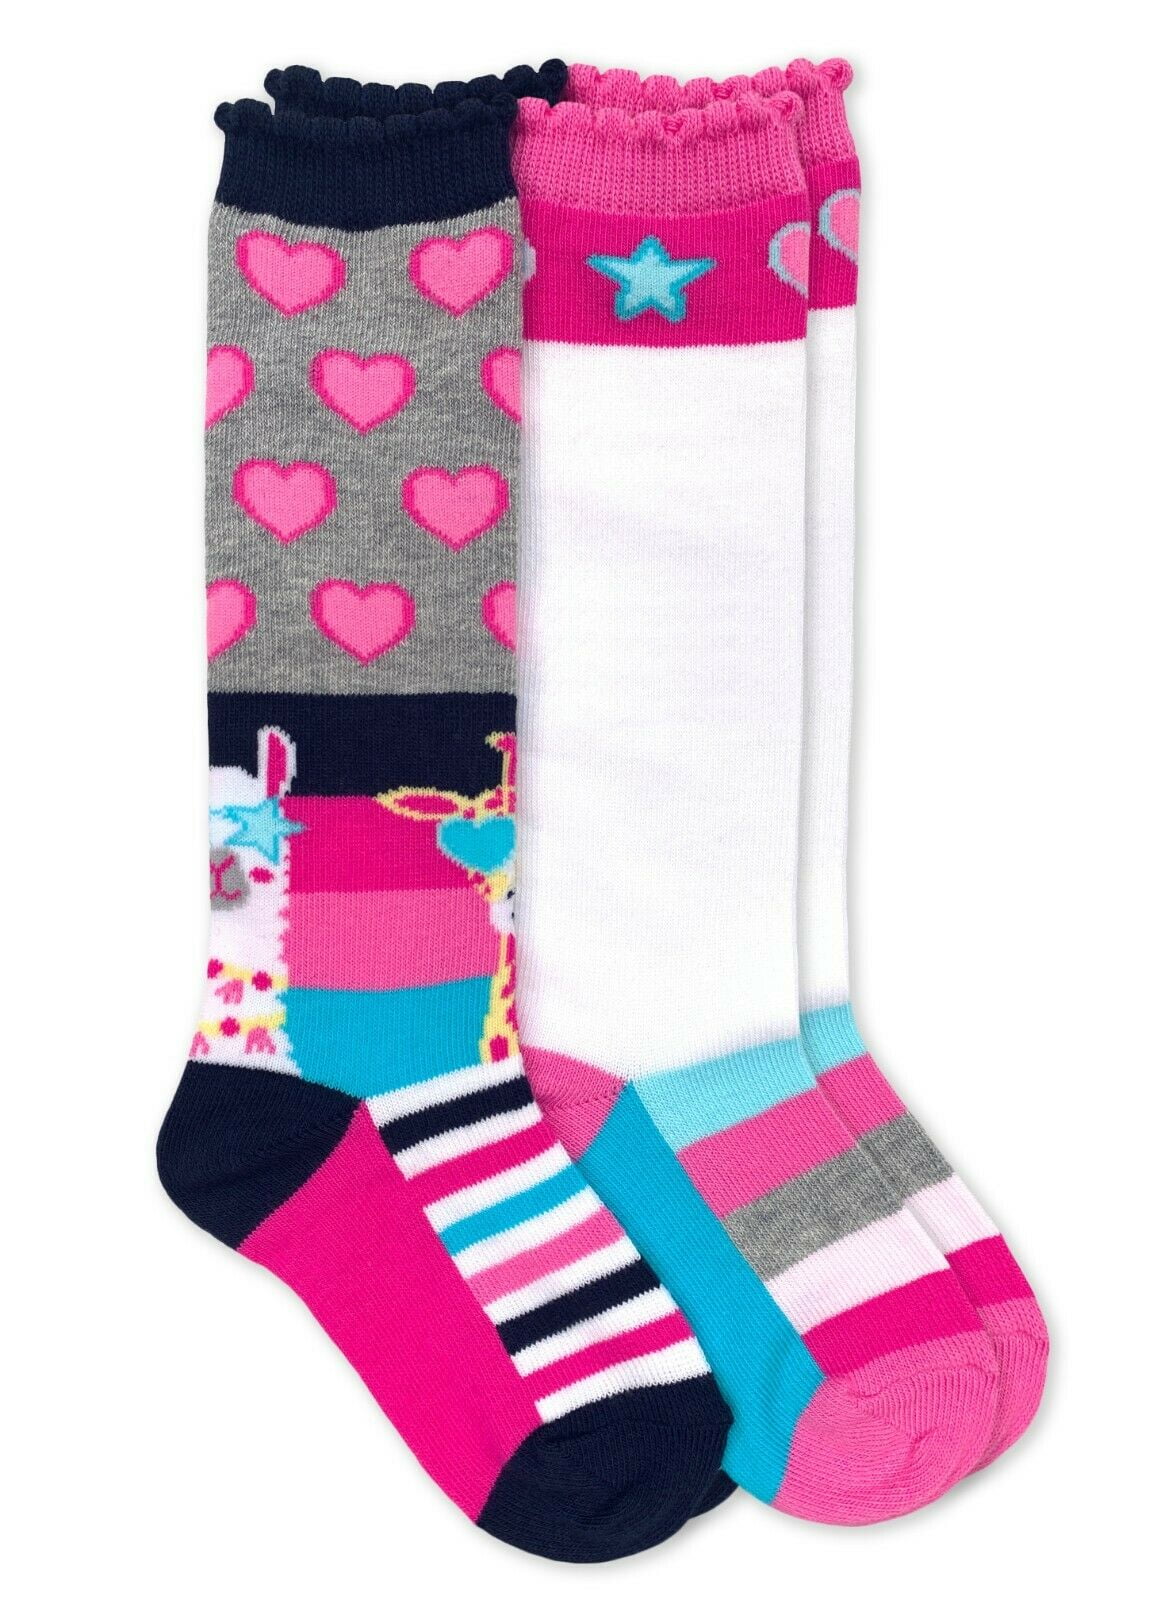 Toddler/Little Kid/Big Kid/Adult Jefferies Socks Baby Girls Ruffle Knee High Socks 2-Pair Pack